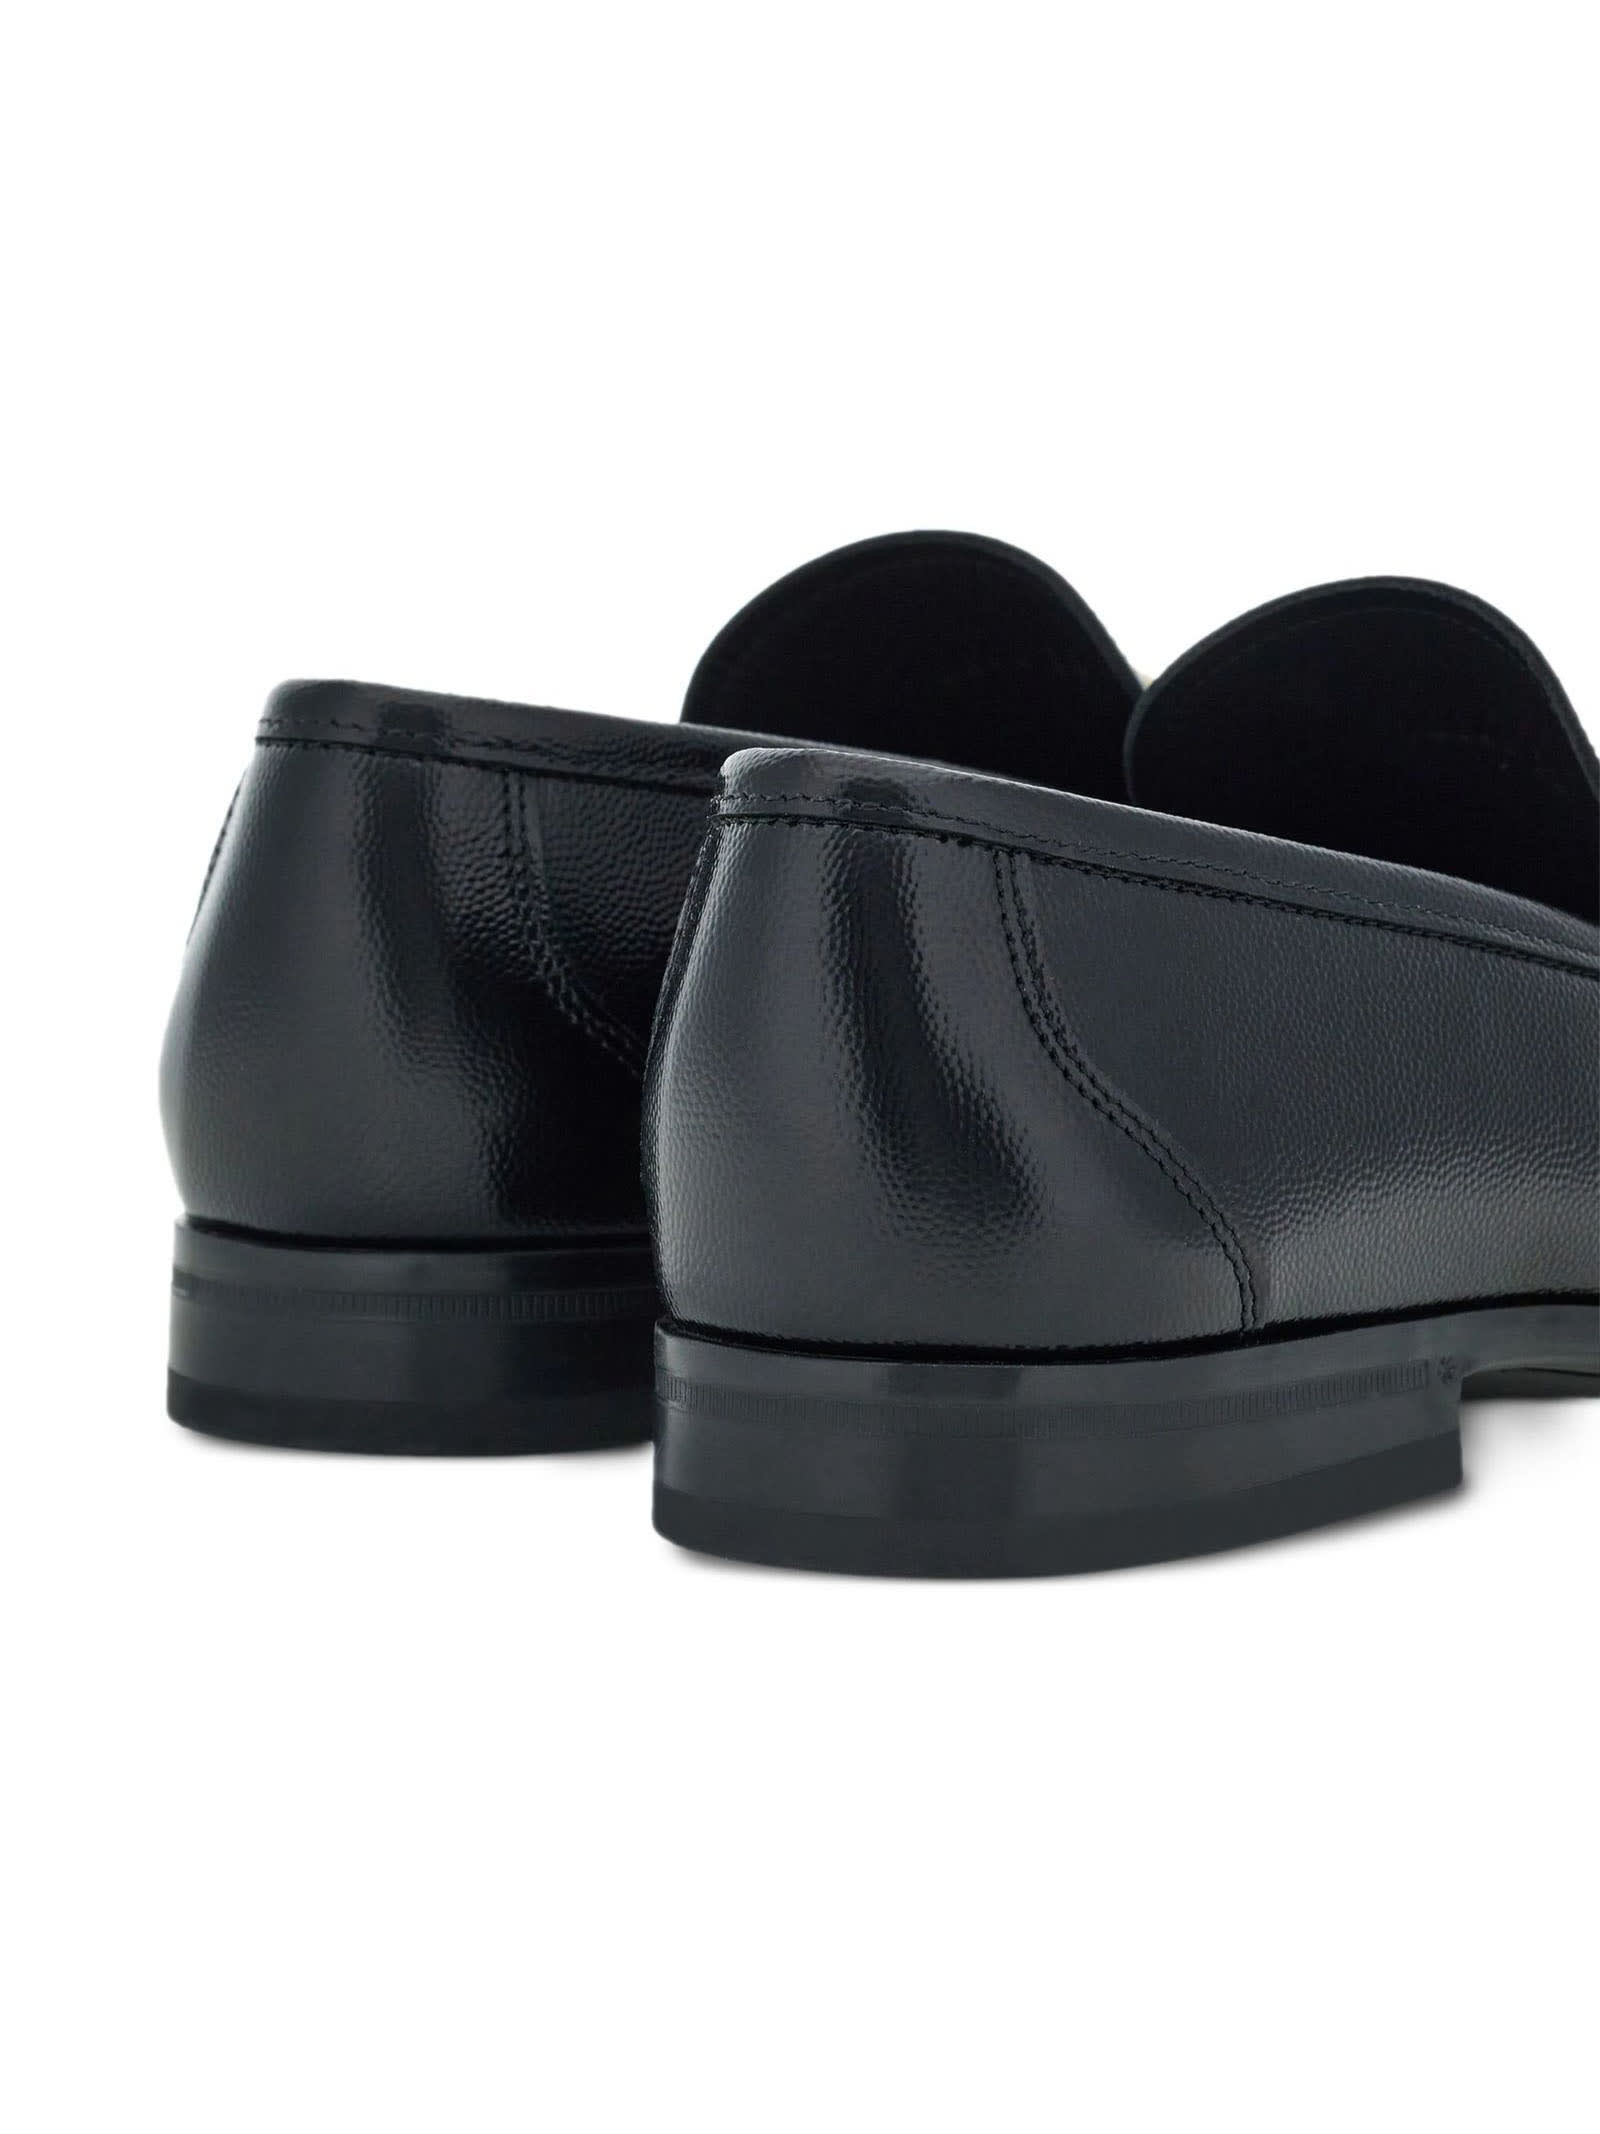 Shop Ferragamo Black Leather Loafer